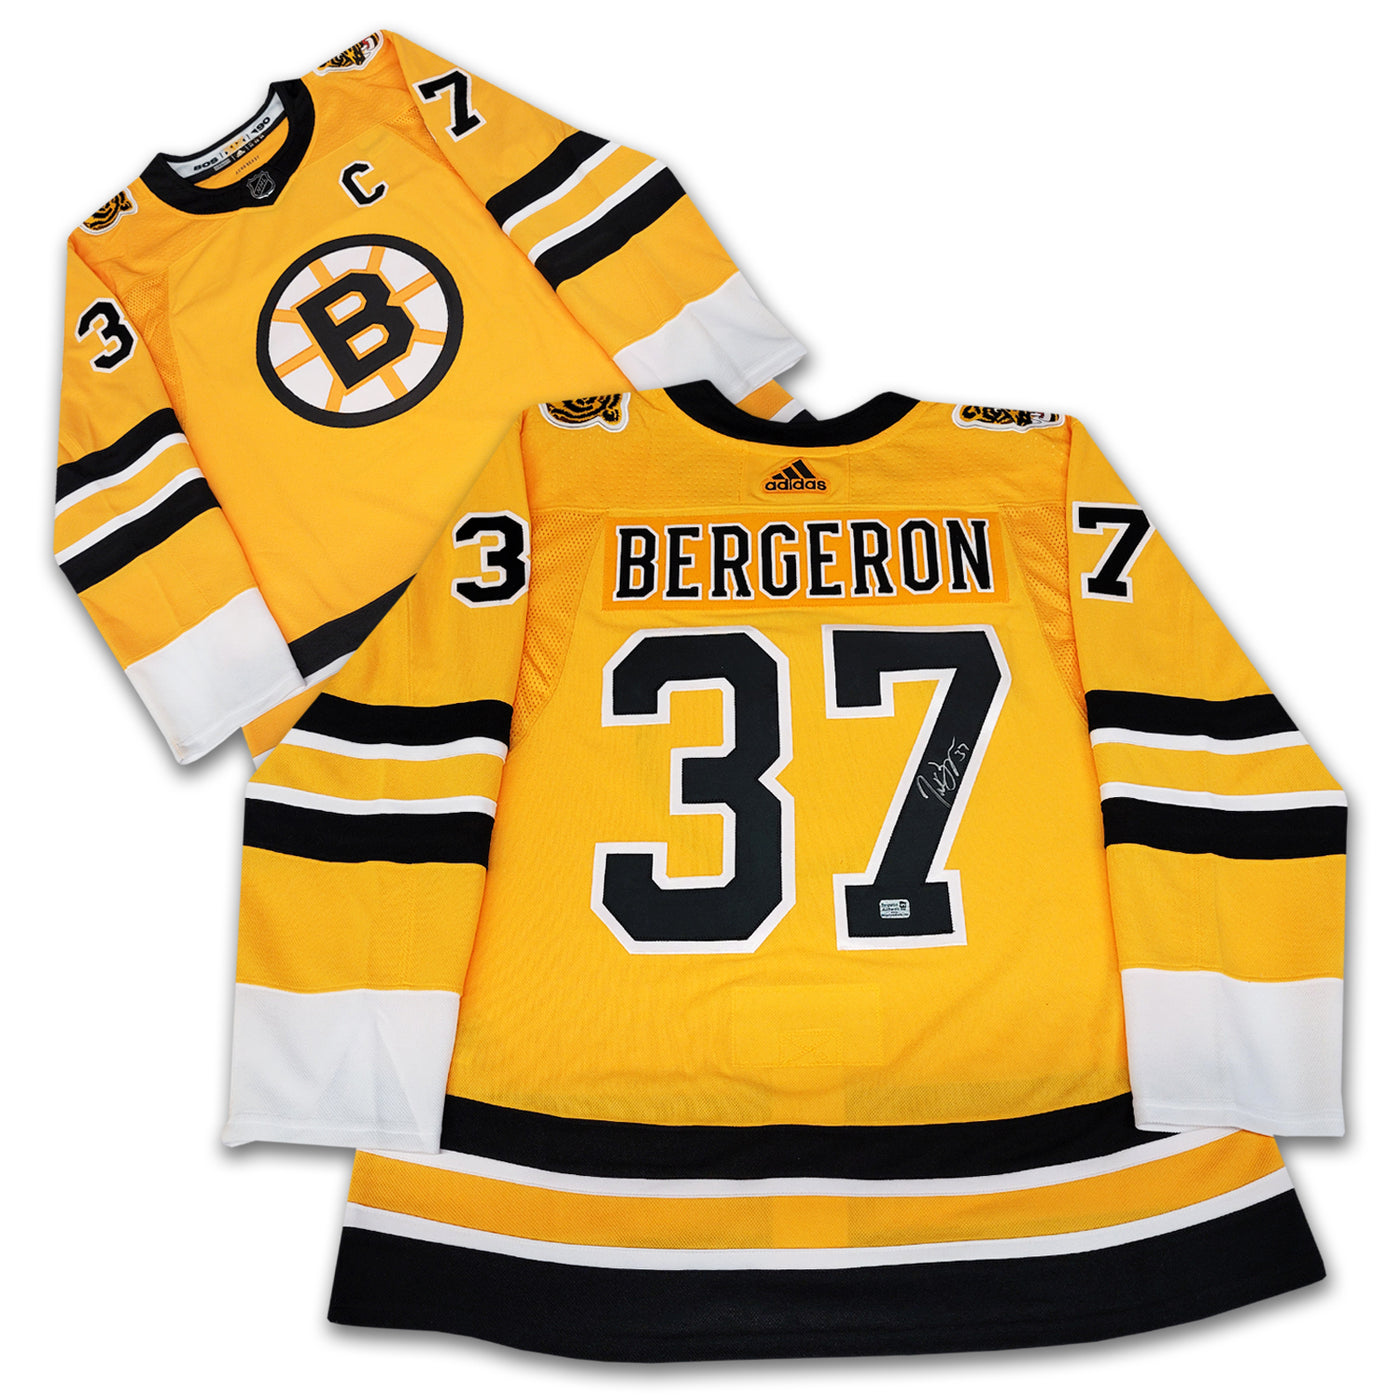 Patrice Bergeron Boston Bruins Reverse Retro Adidas Jersey